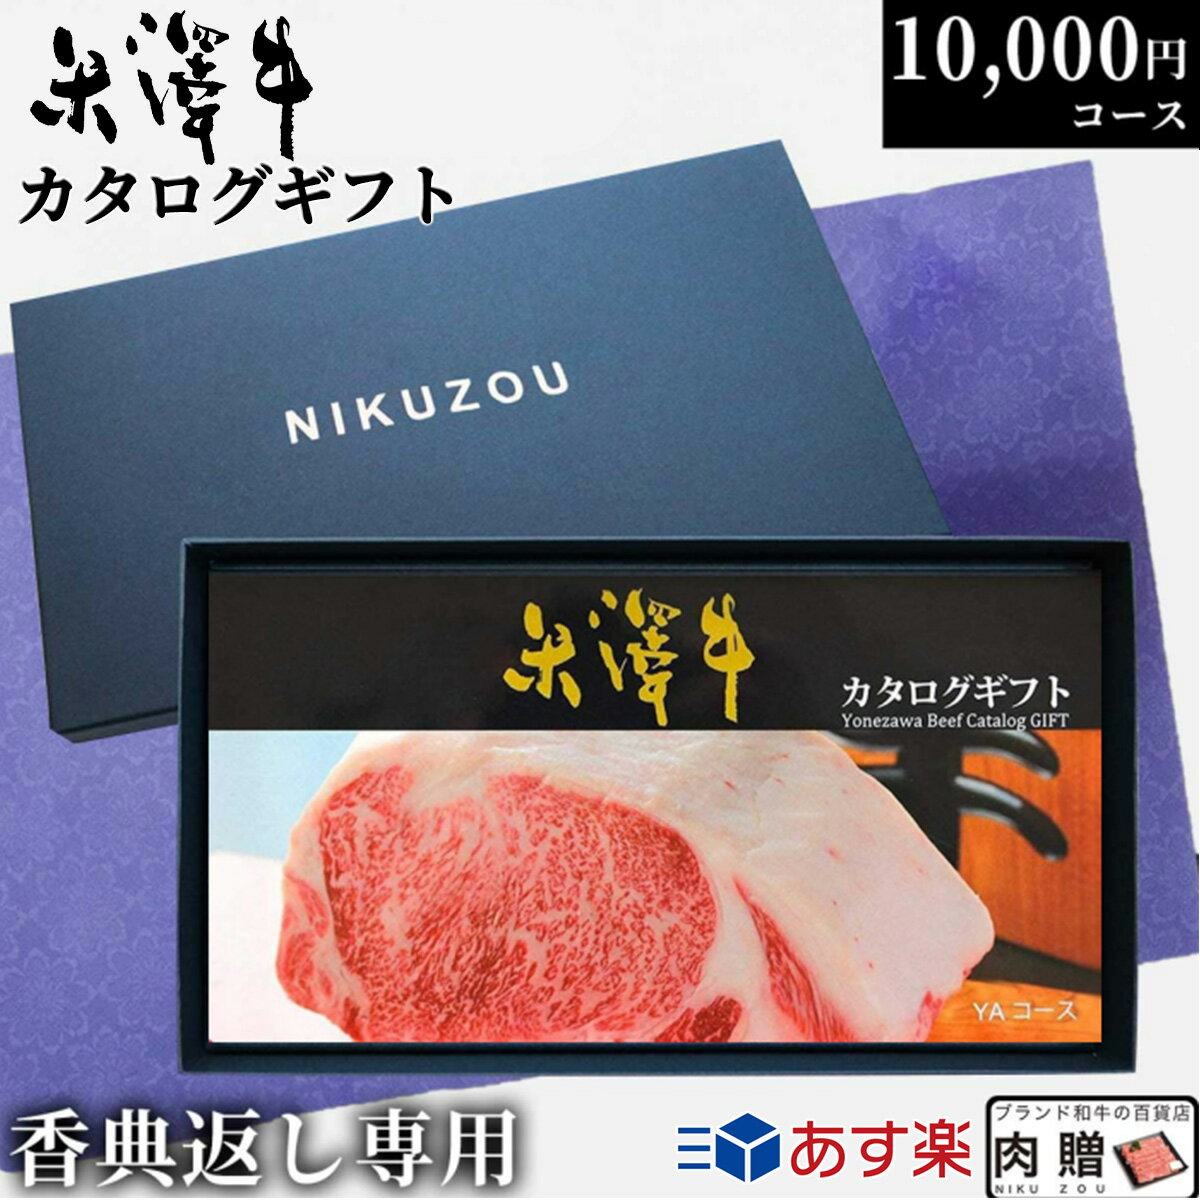 【香典返し 専用】肉 米沢牛 カタログギフト YAコース 1